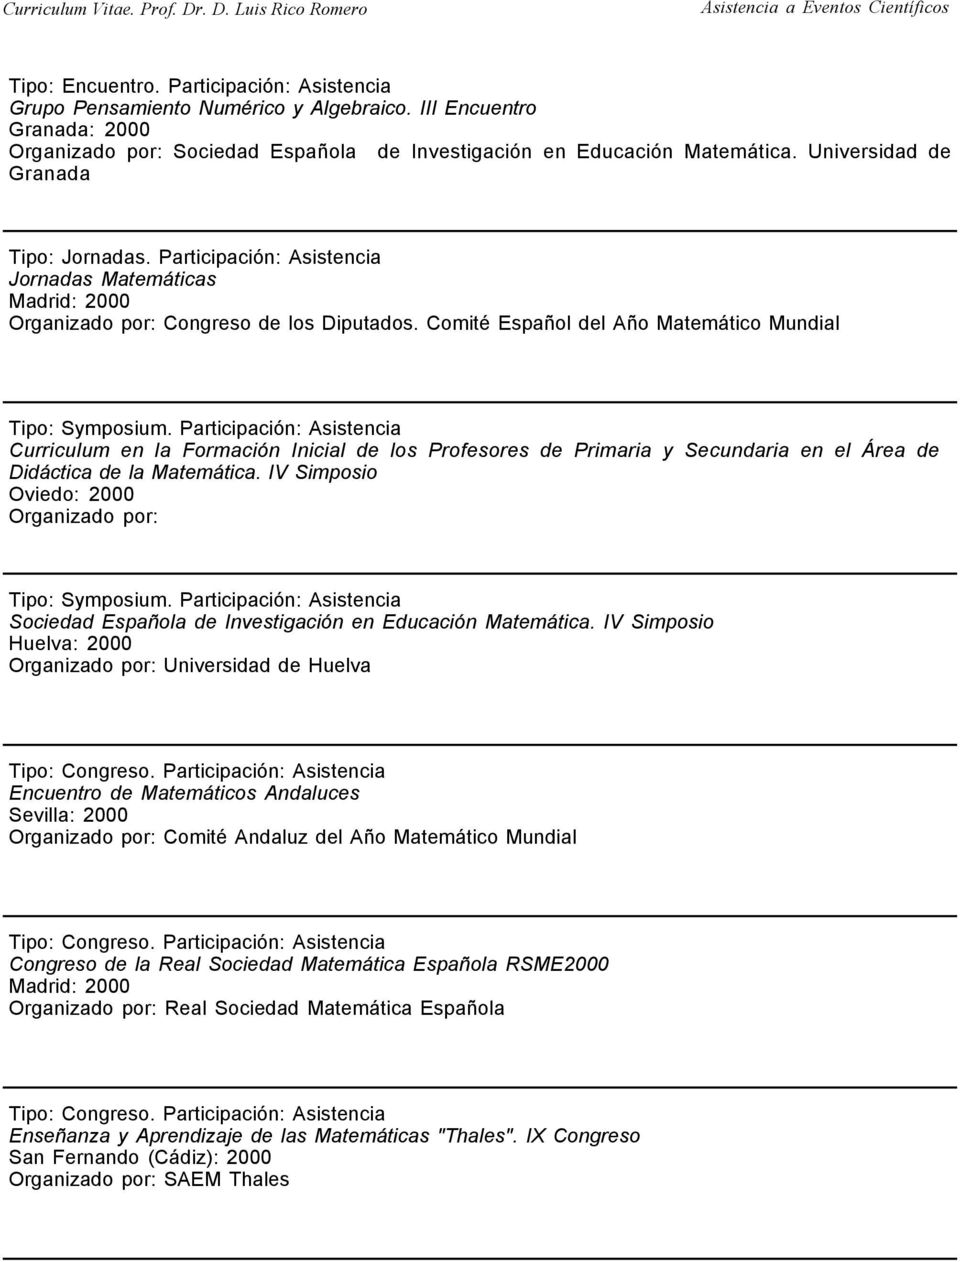 Comité Español del Año Matemático Mundial Curriculum en la Formación Inicial de los Profesores de Primaria y Secundaria en el Área de Didáctica de la Matemática.